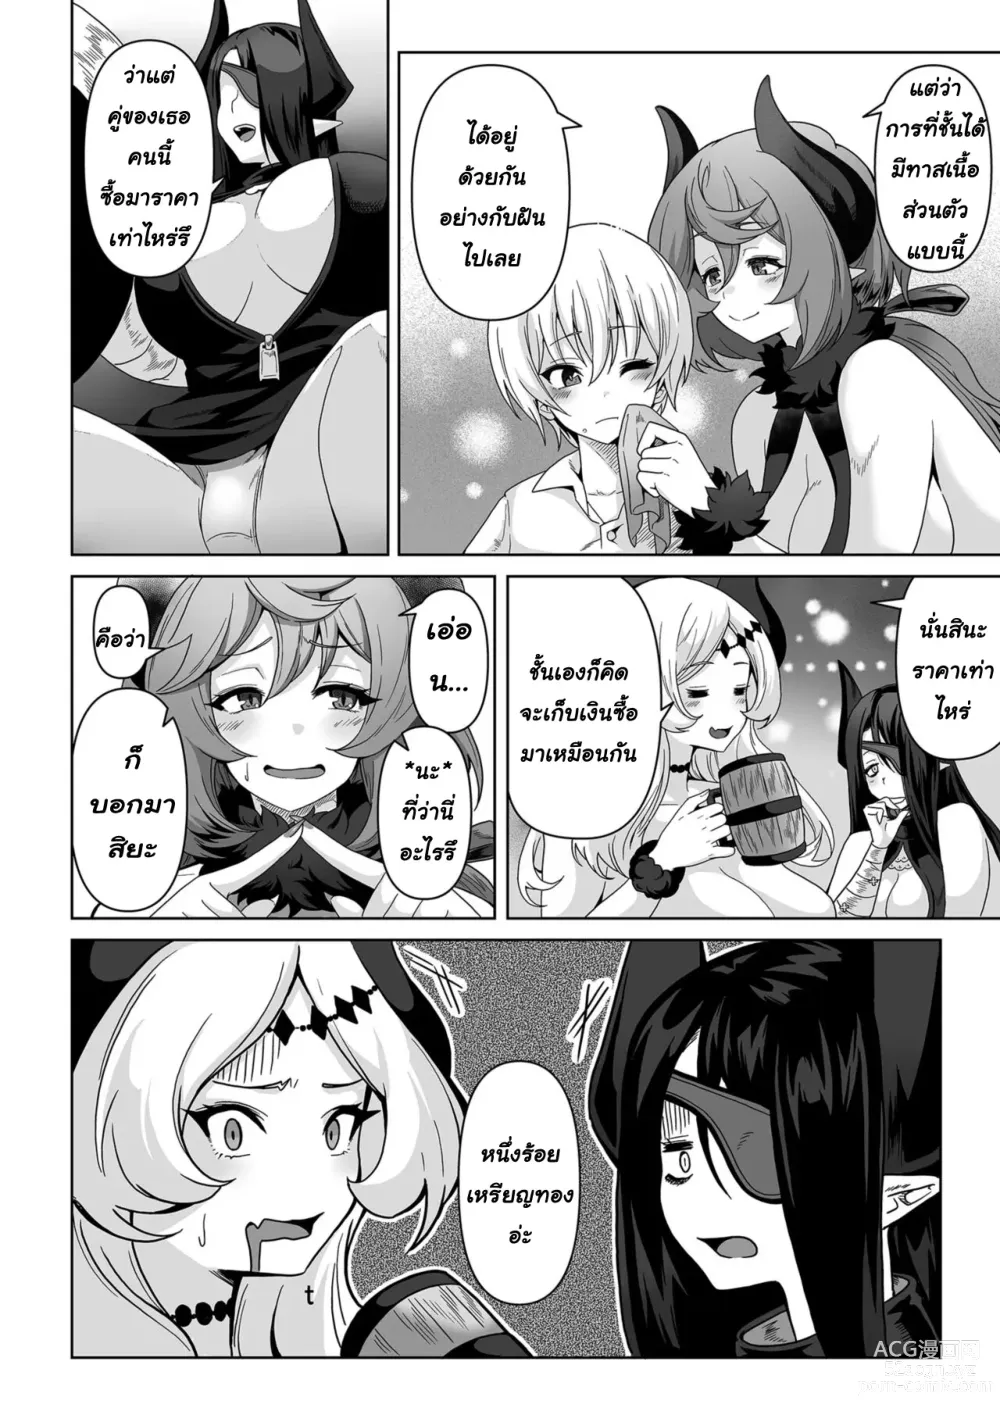 Page 3 of manga Sakyubasu kingudamu dai isekai kara kita shounen 2